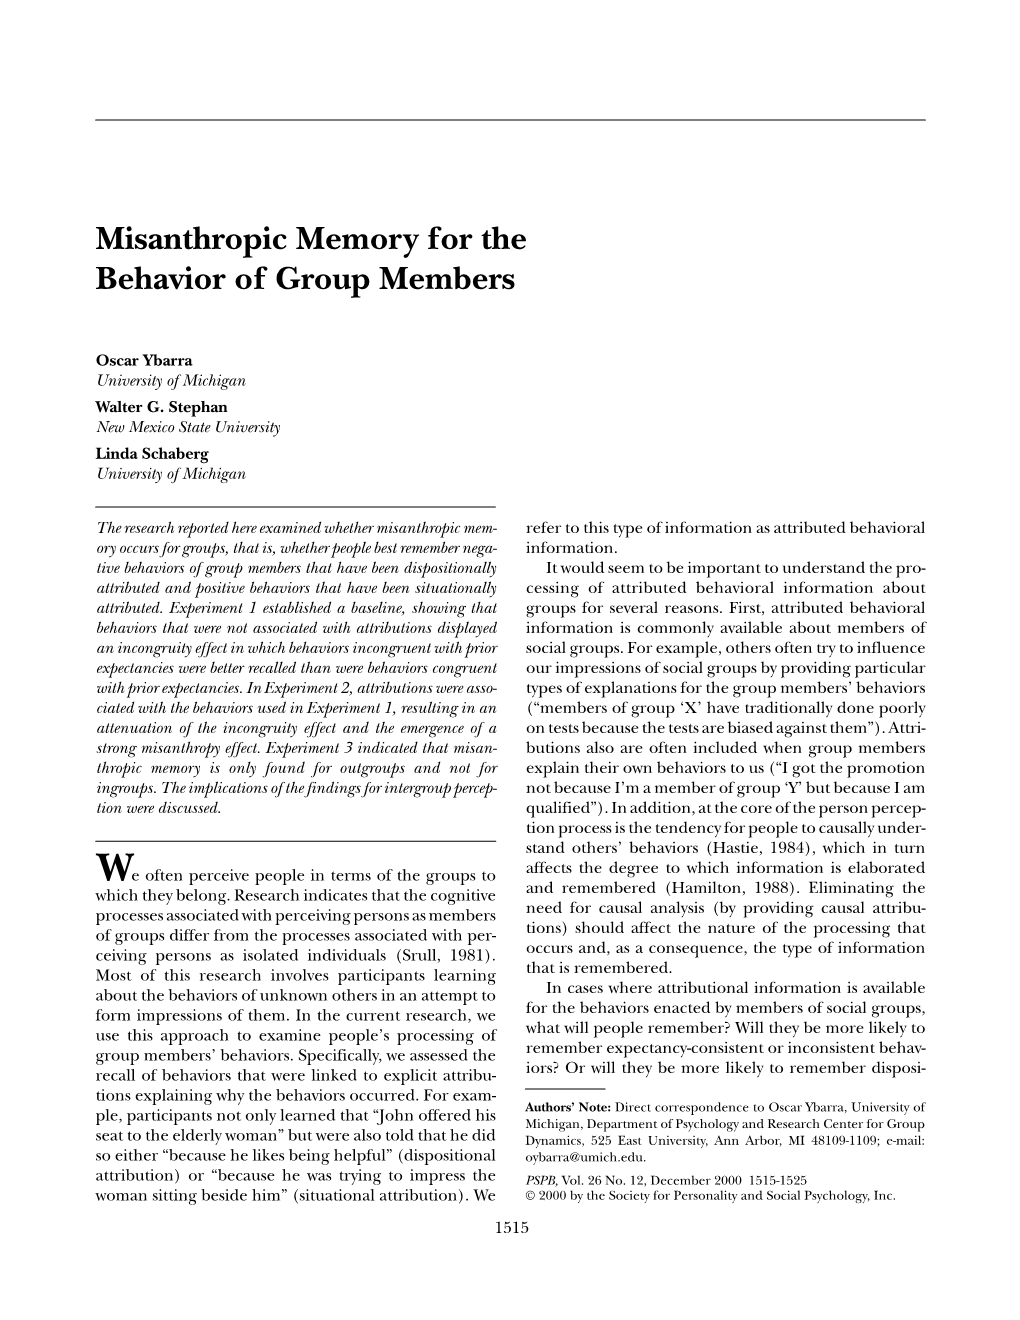 Misanthropic Memory for the Behavior of Group Members